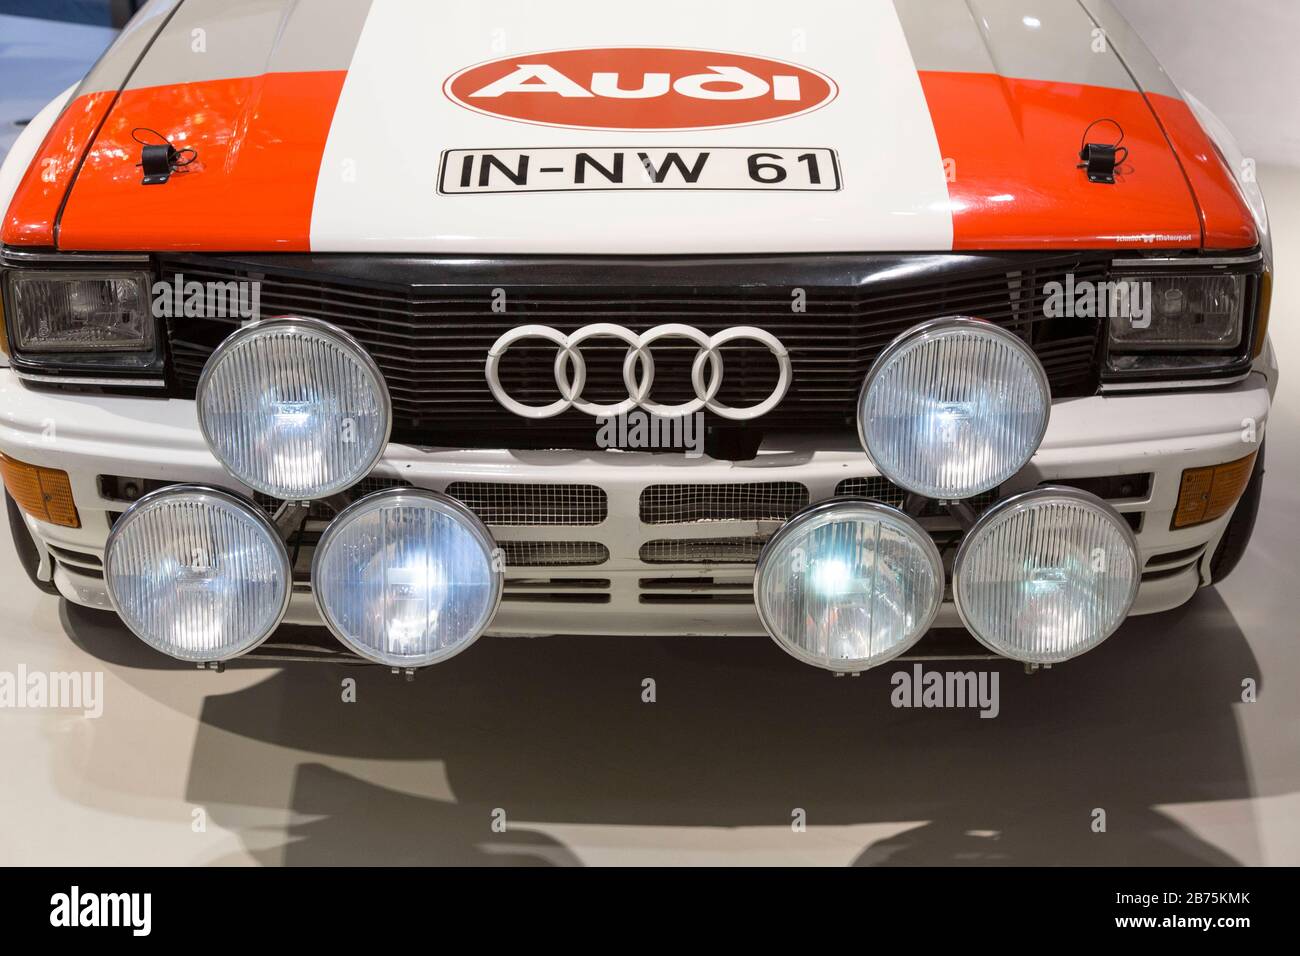 Ein Audi Quattro in der Rallye-Version, Baujahr 2017 ist in der Ausstellung des Deutschen Technikmuseums am 05.12.2017 in Berlin zu sehen. Das Deutsche Technikmuseum verfügt über mehr als 200 historische Oldtimer-Autos.30 davon sind dauerhaft in der Ausstellung "Mensch in Fahrt" zu sehen, die anderen Fahrzeuge befinden sich im Museumsdepot. [Automatisierte Übersetzung] Stockfoto